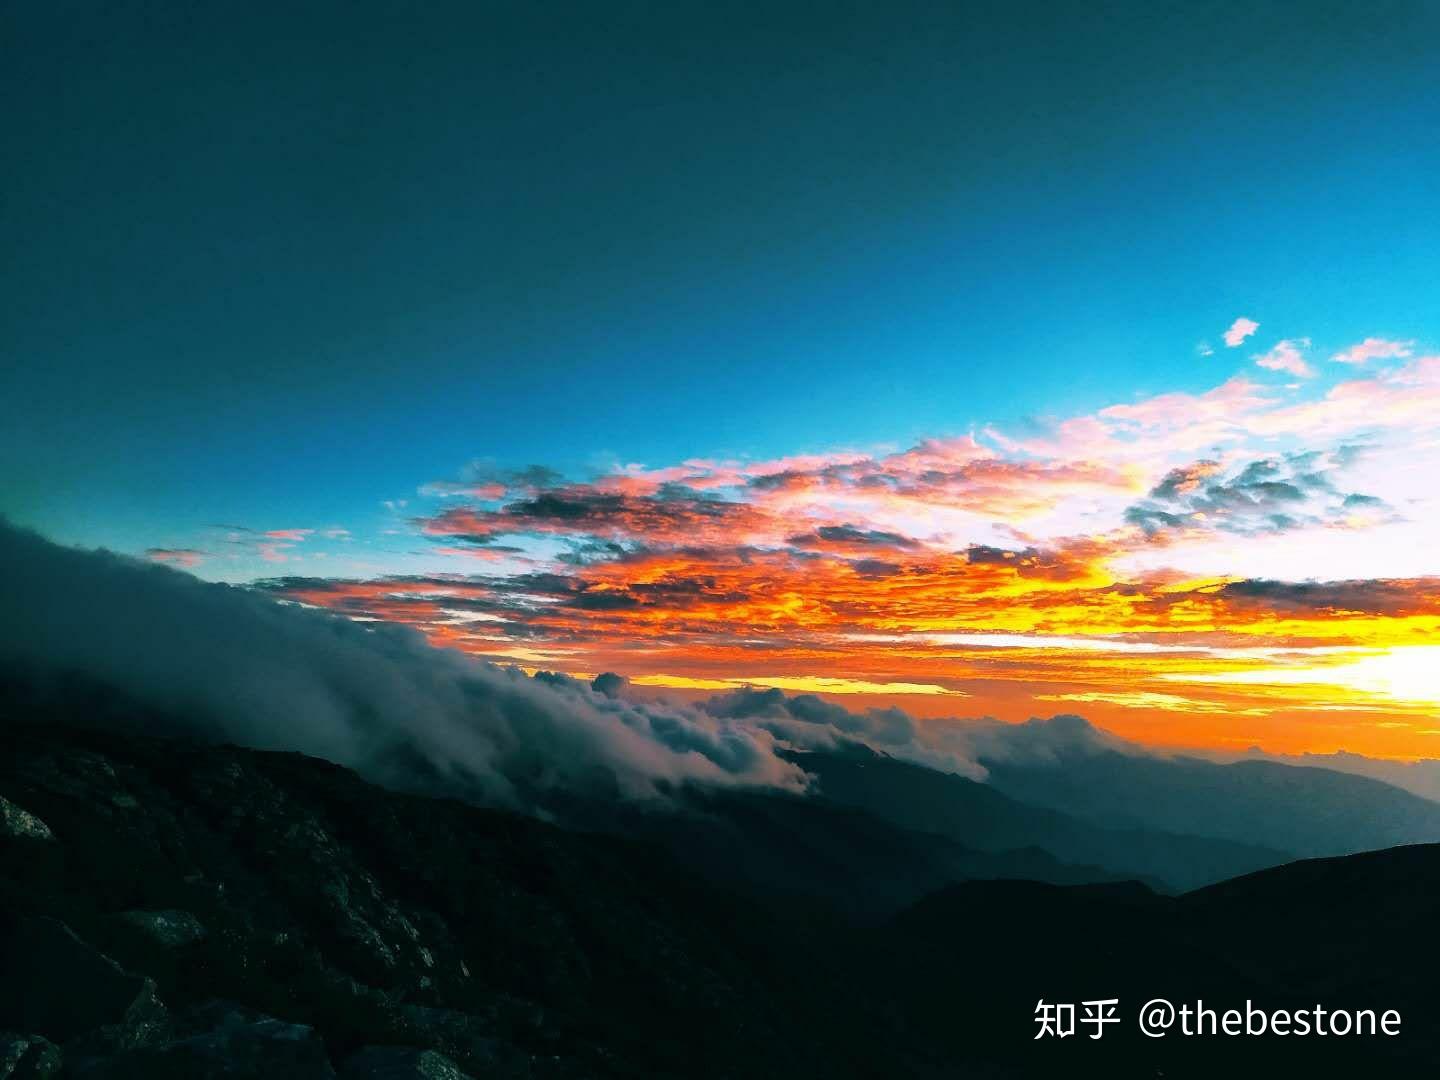 让世界感知秦岭之美 - 景区新闻 - 太白山旅游官网